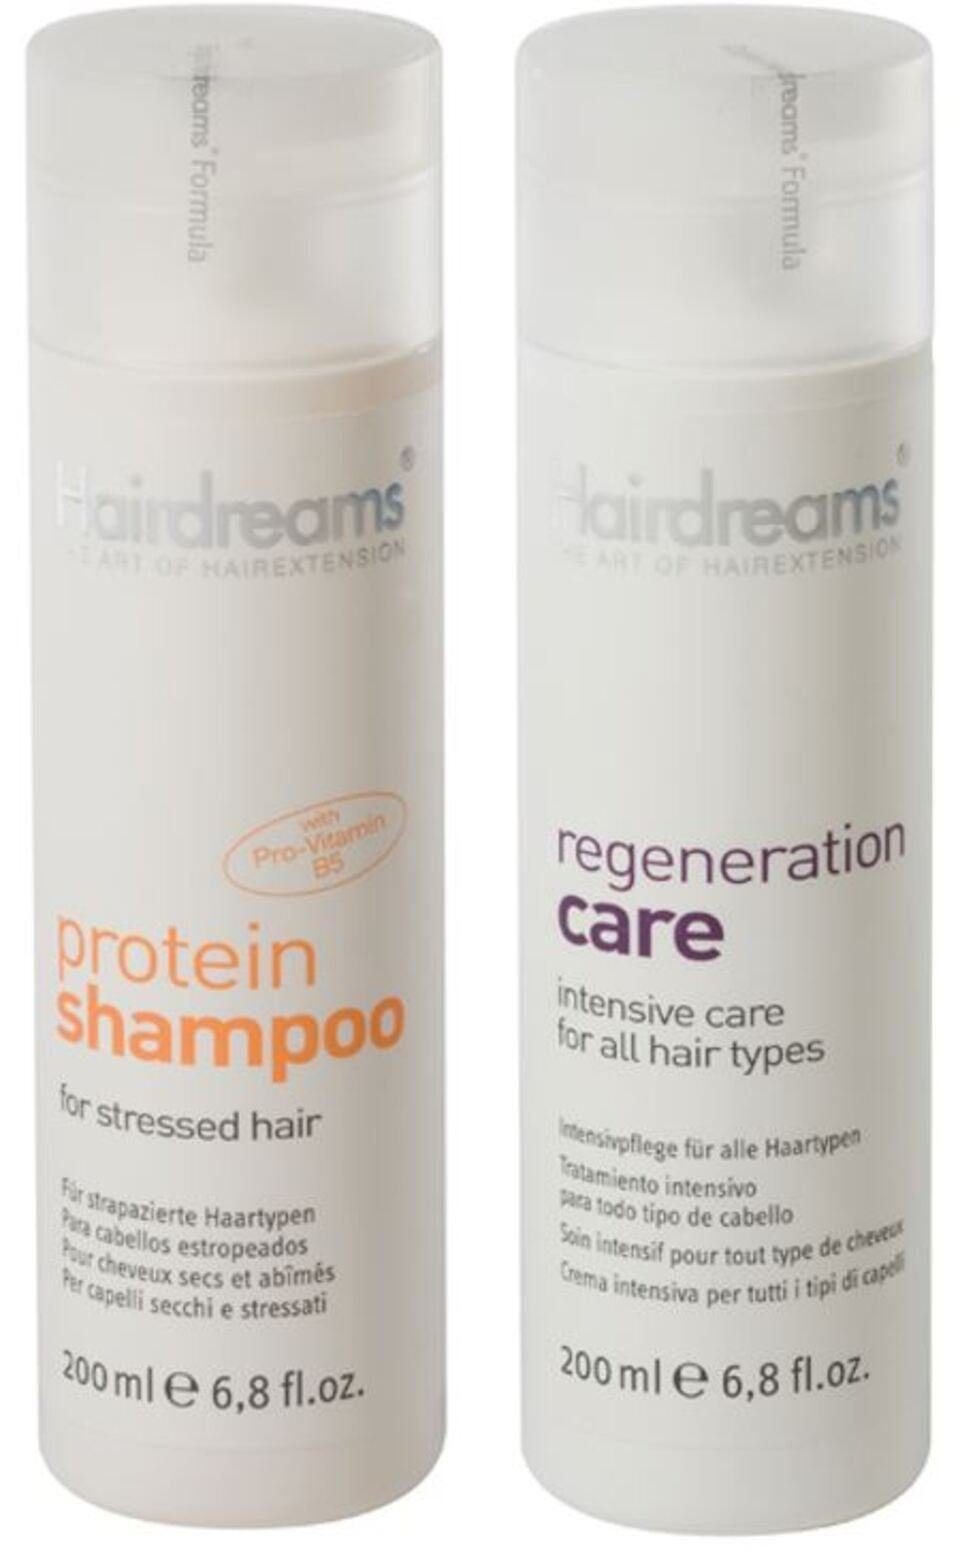 Hairdreams Haarpflege-Set 2-tlg., Set, mit Shampoo für Care, Echthhaarverlängerungen Protein Haare + Regeneration